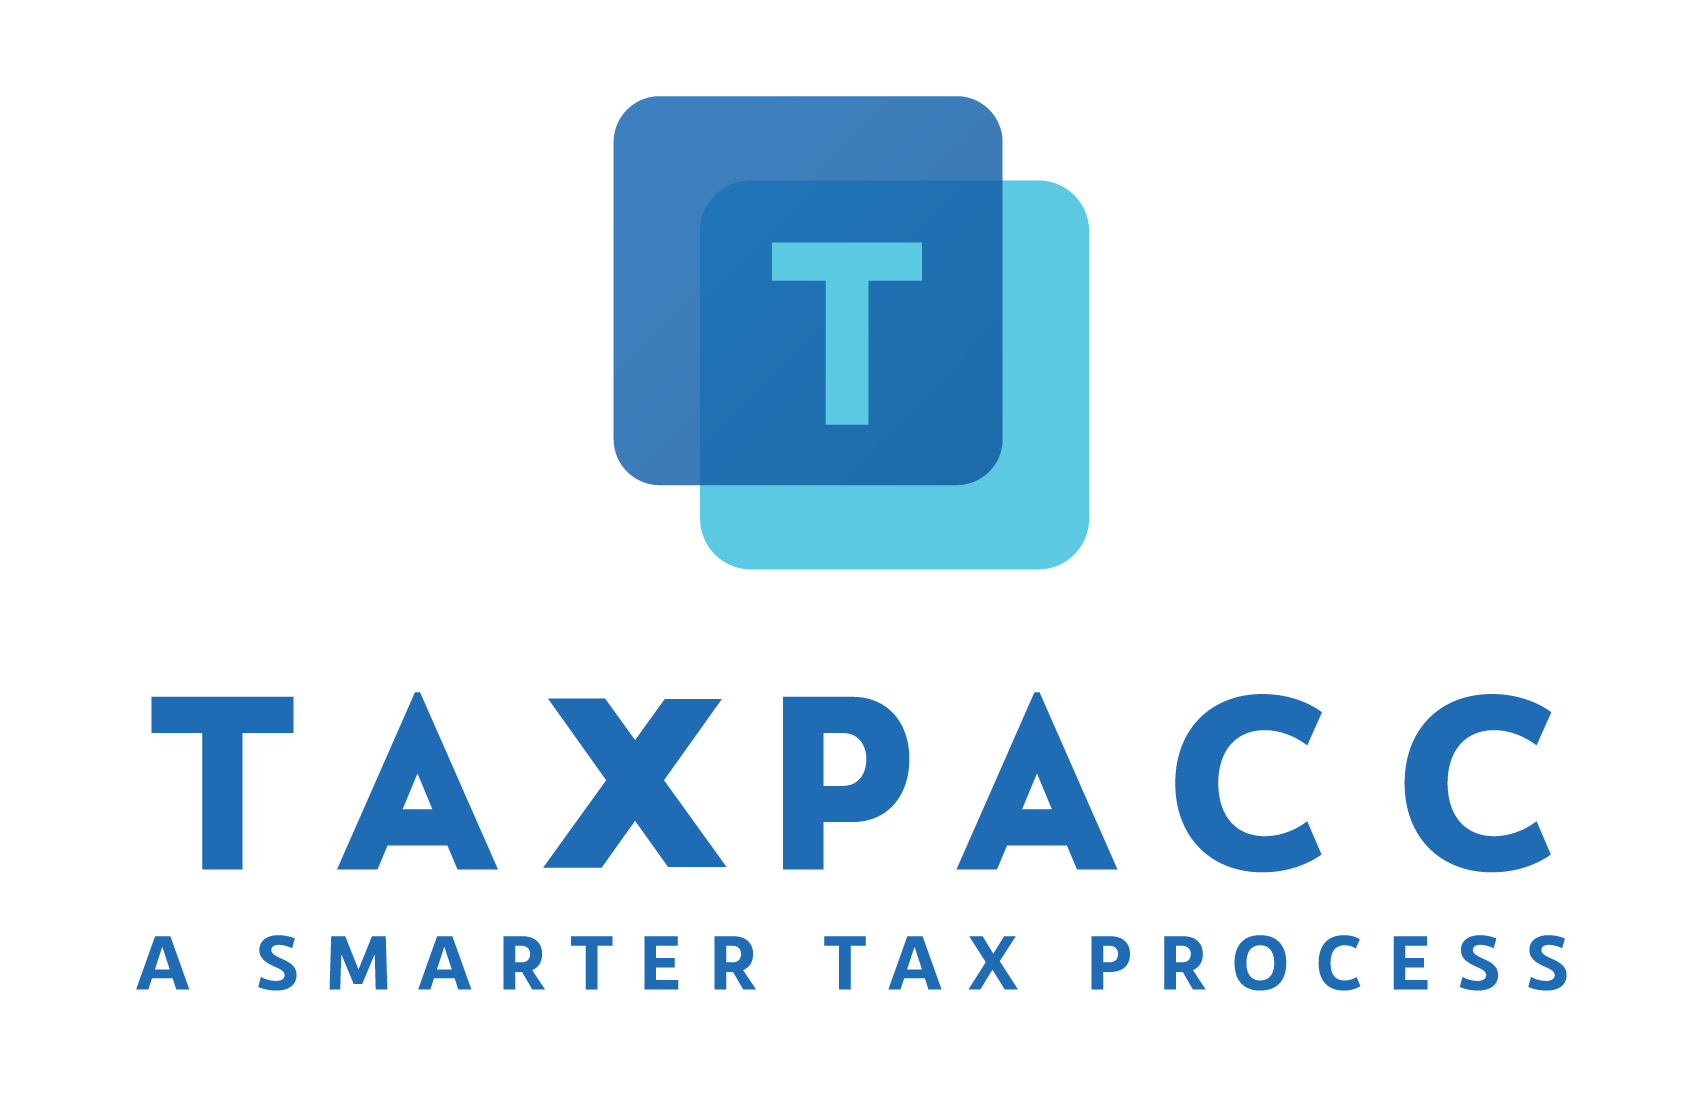 TaxPacc - a smarter tax process